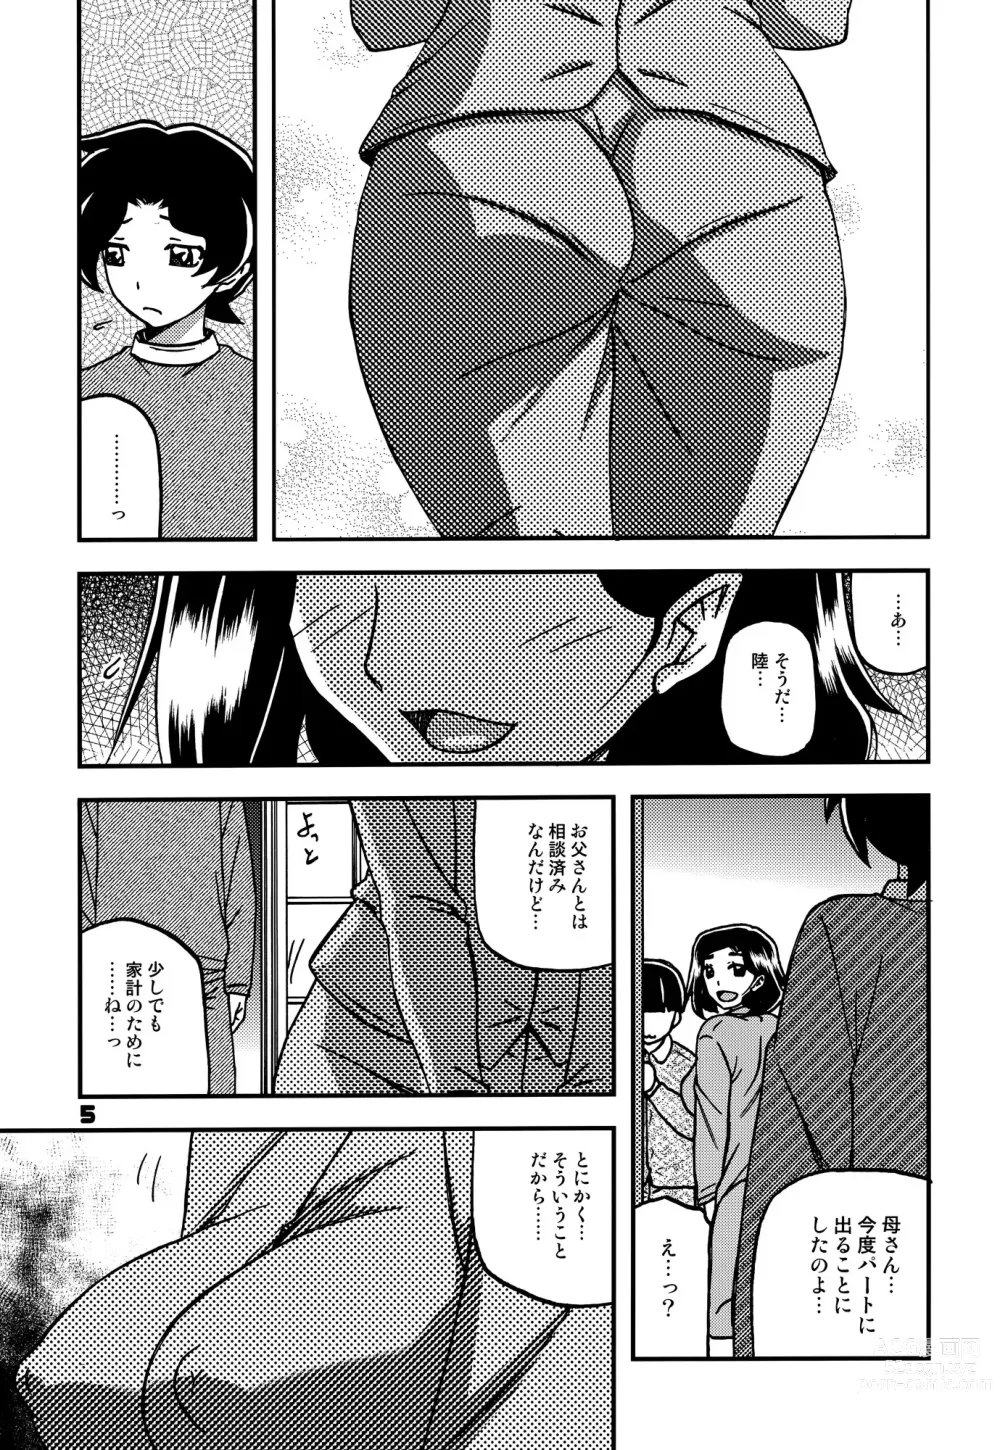 Page 4 of doujinshi Akebi no Mi - Misora AFTER